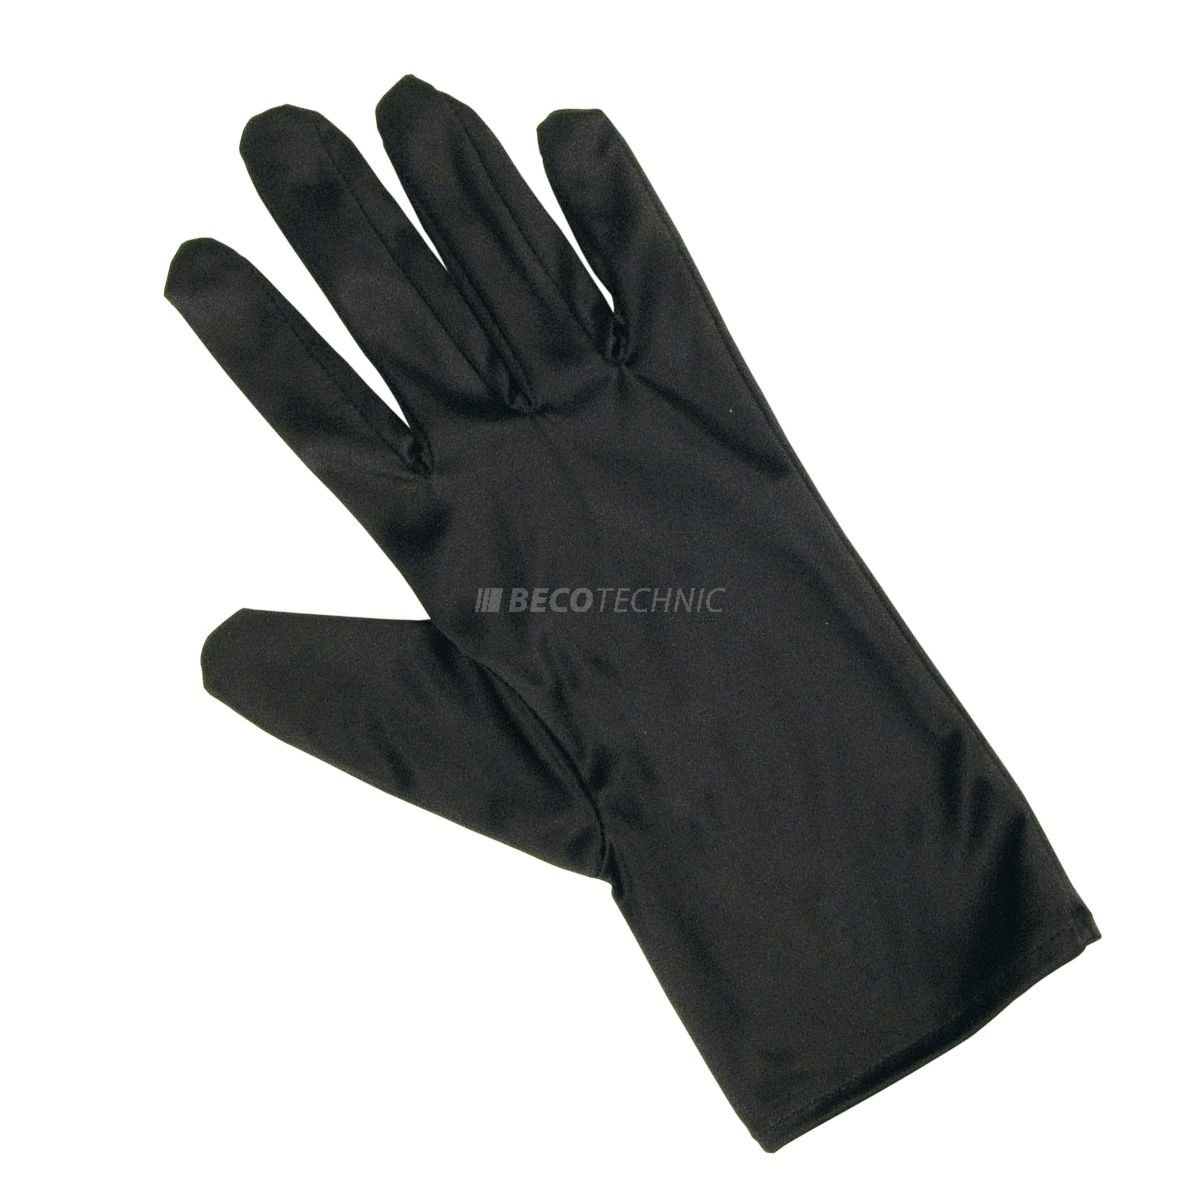 Heli presentatie handschoenen, microfiber, zwart, maat M, 1 paar